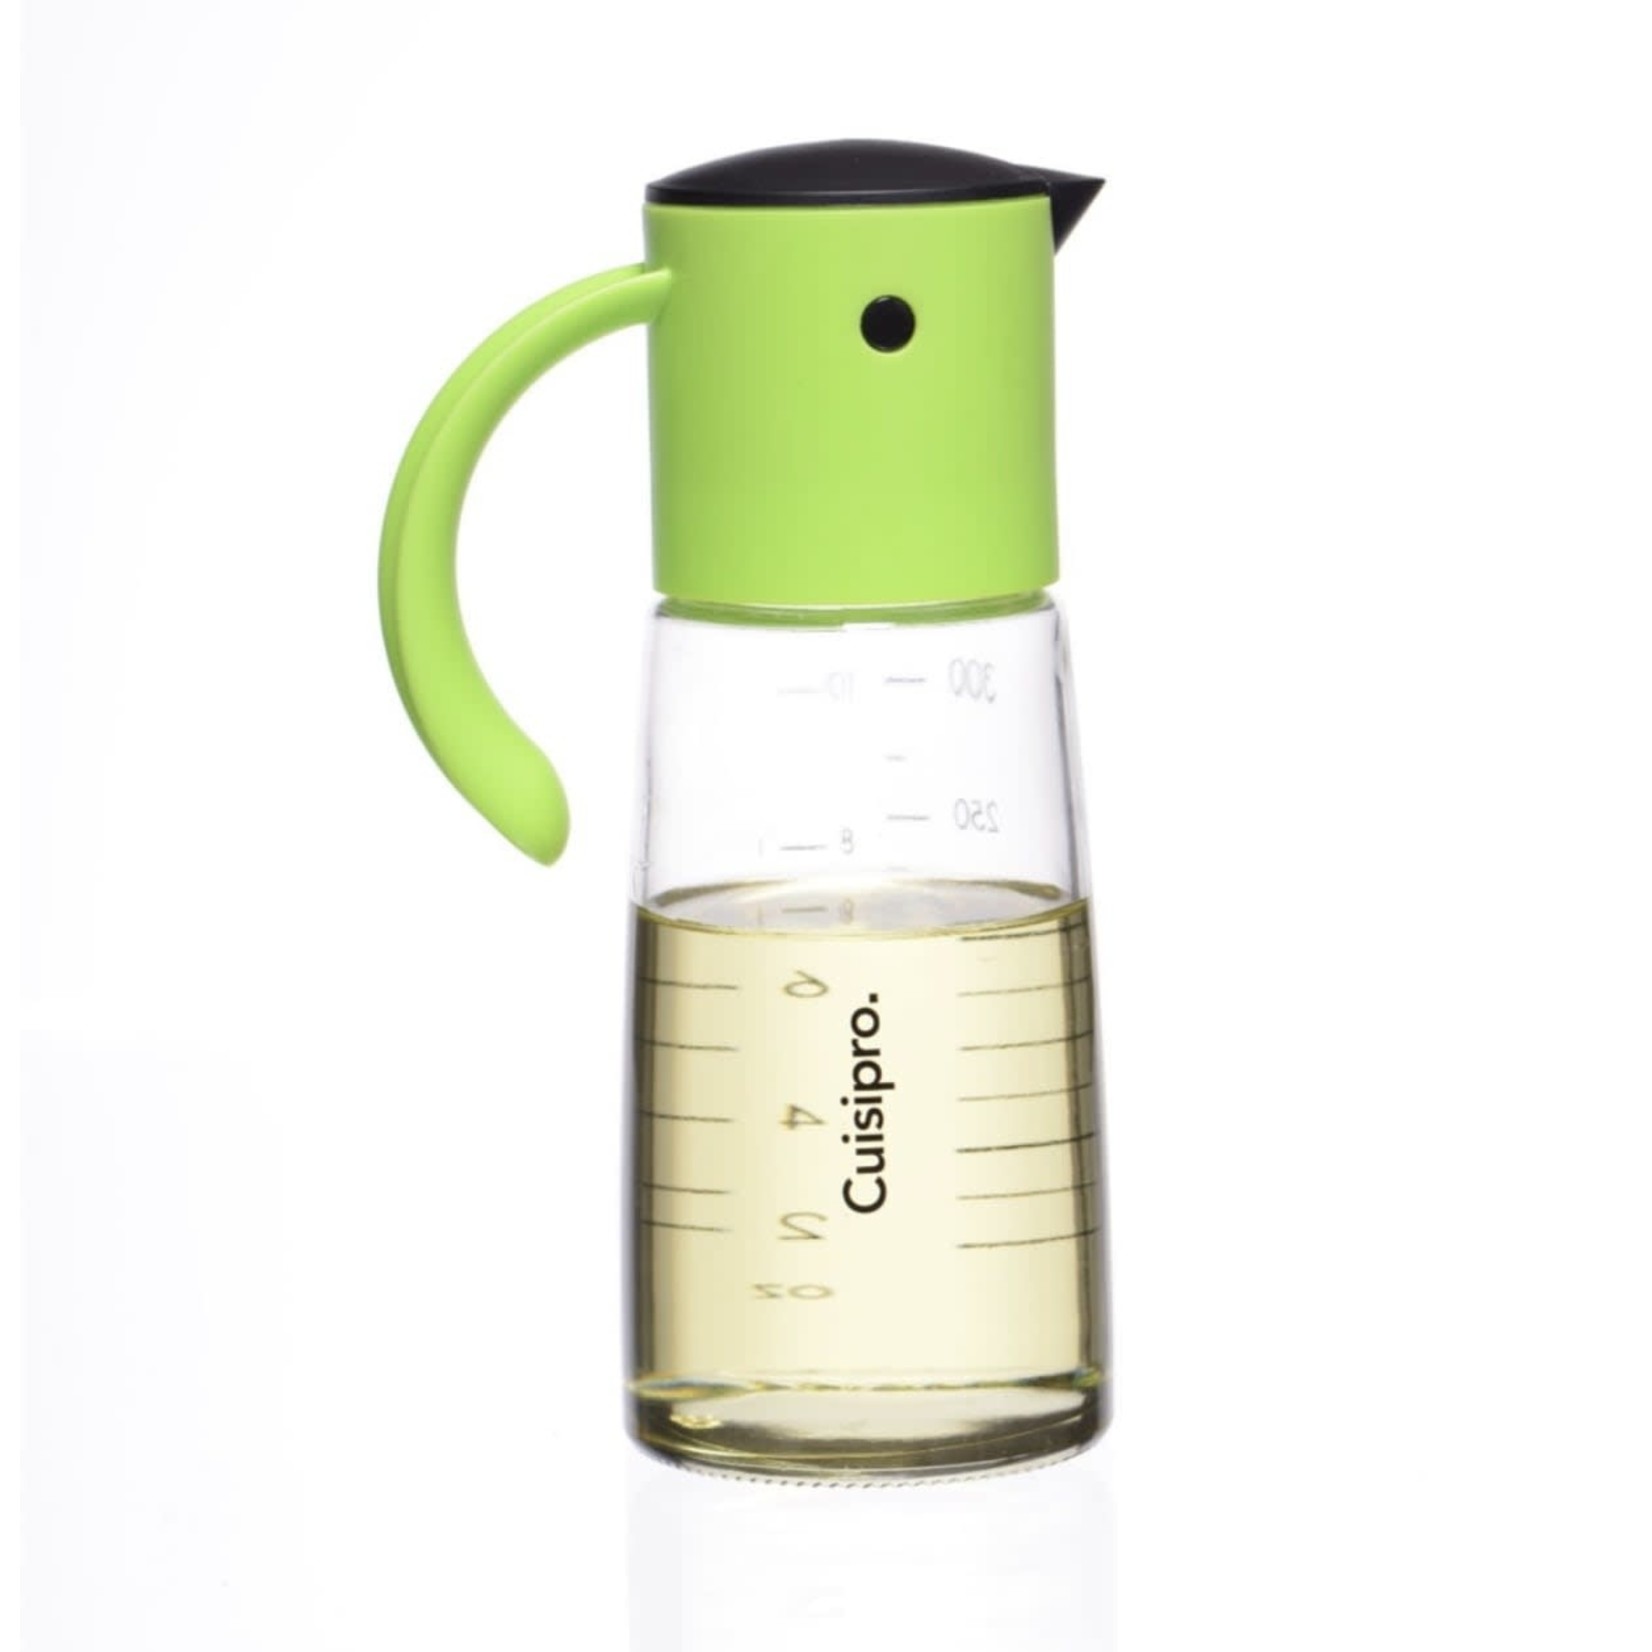 CUISIPRO CUISIPRO Oil & Vinegar Dispenser 300ml Green